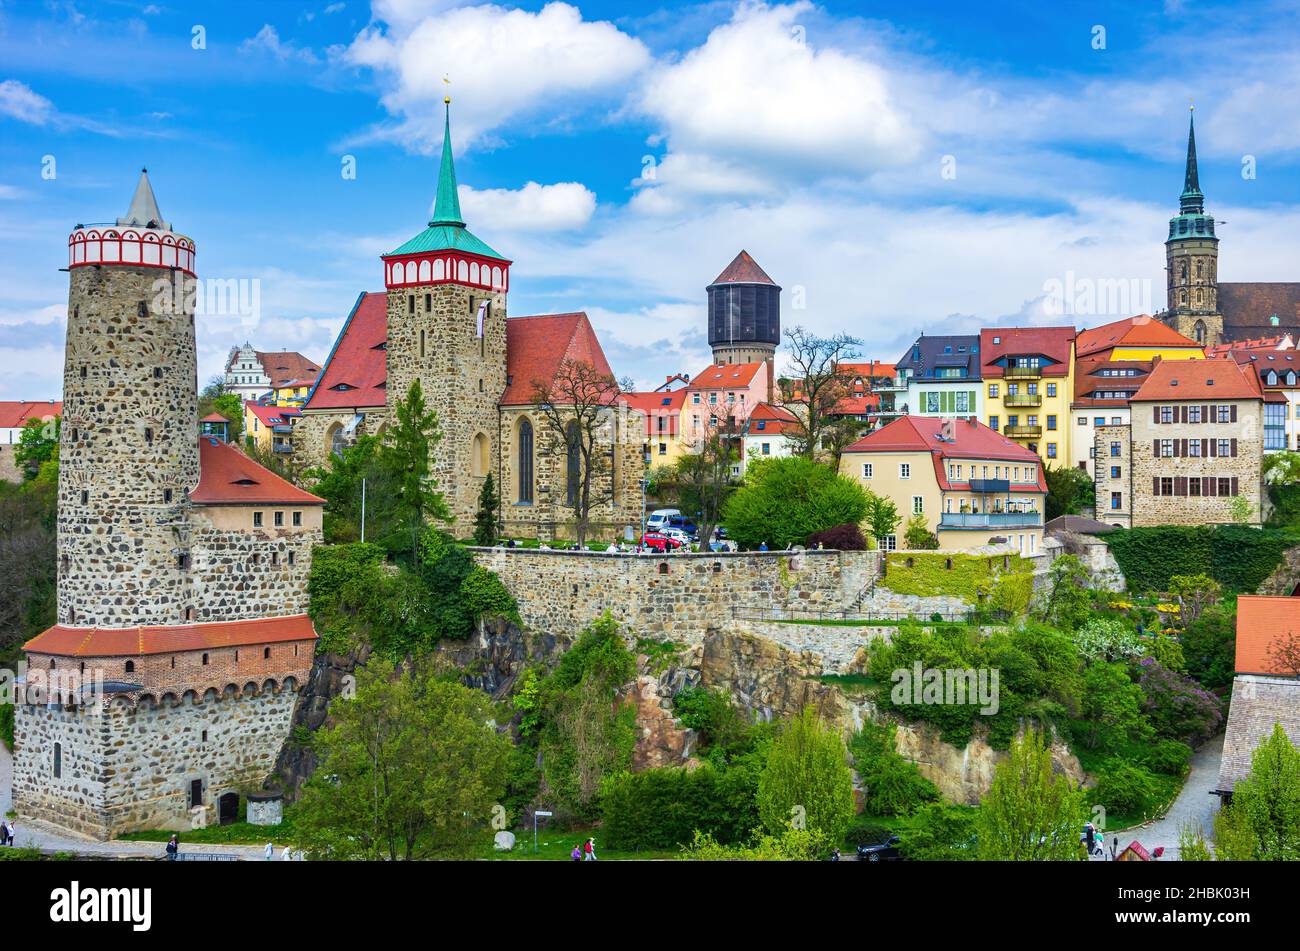 Bautzen, Oberlausitz, Sachsen, Deutschland: Die bekannte Silhouette der mittelalterlichen Altstadt mit den charakteristischen Gebäuden. Stockfoto